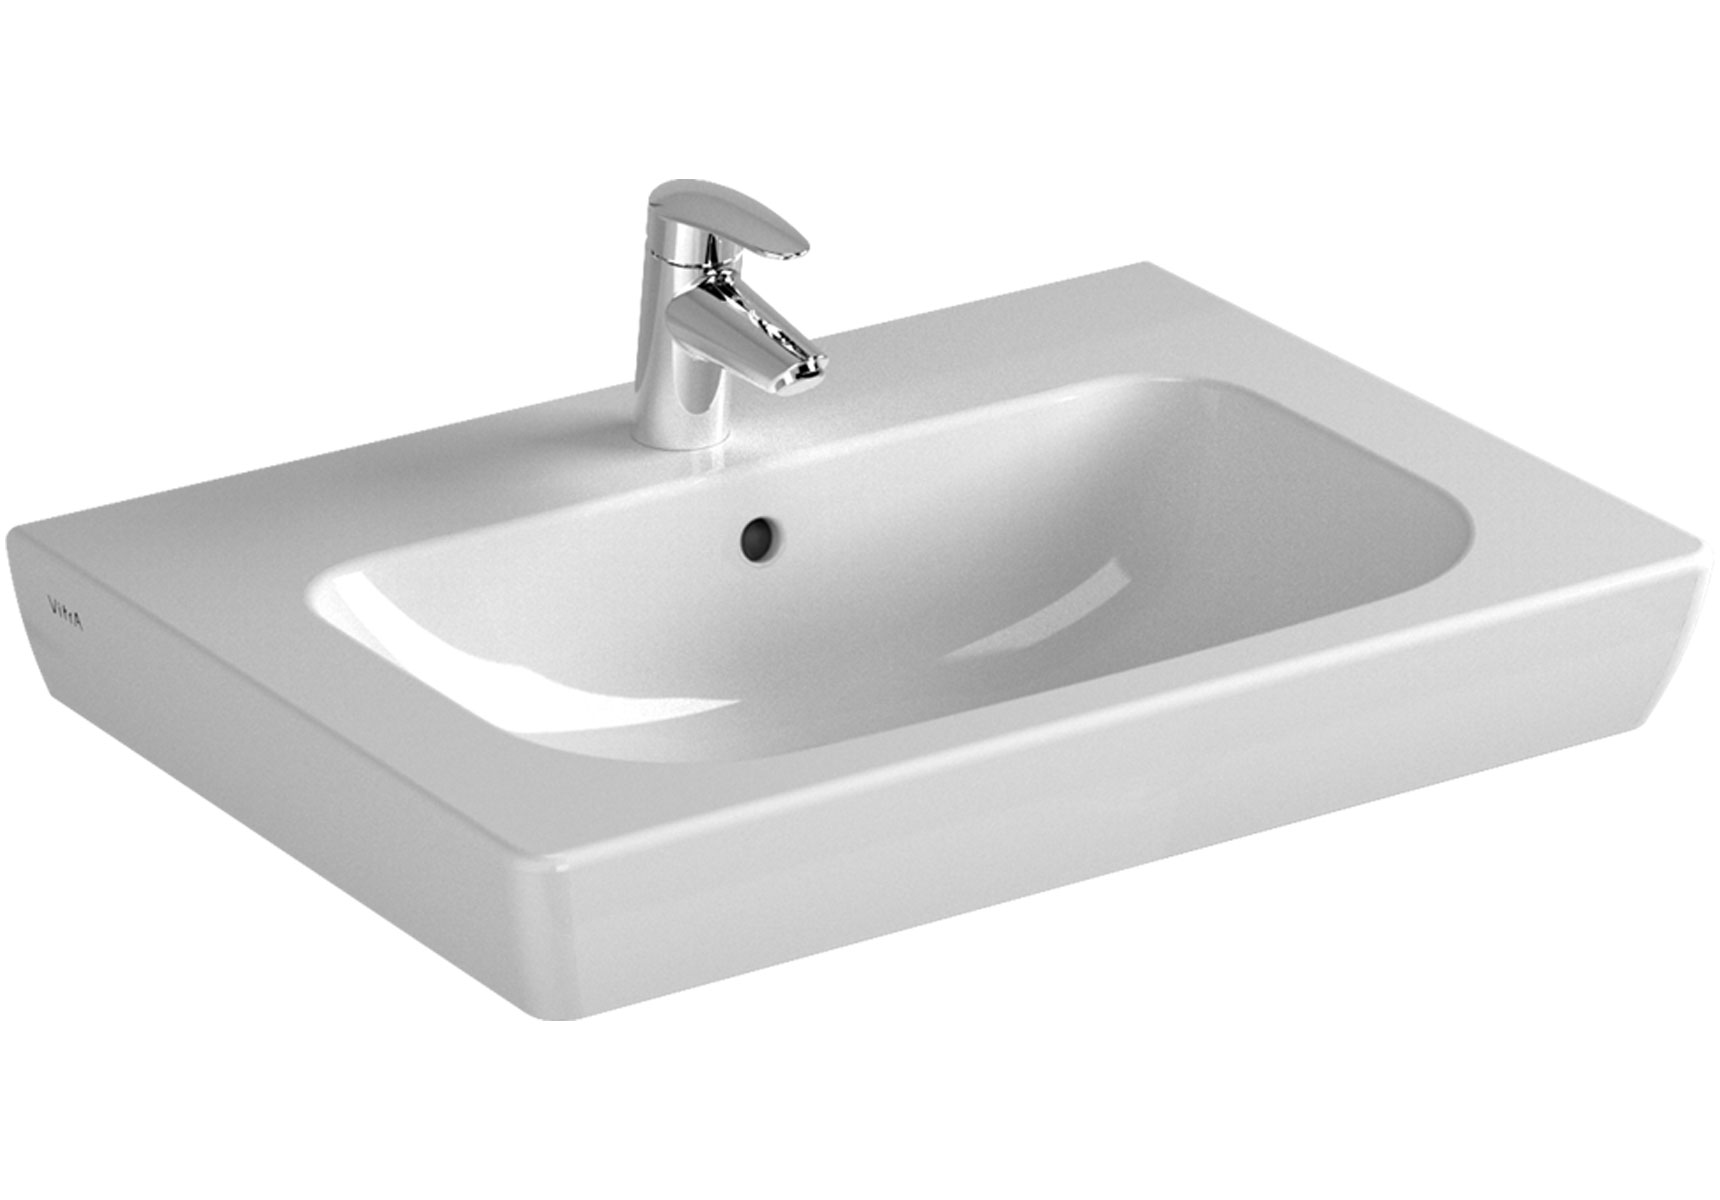 S20 plan céramique, 65 cm, 1 trou central pour robinet, avec trop-plein, blanc